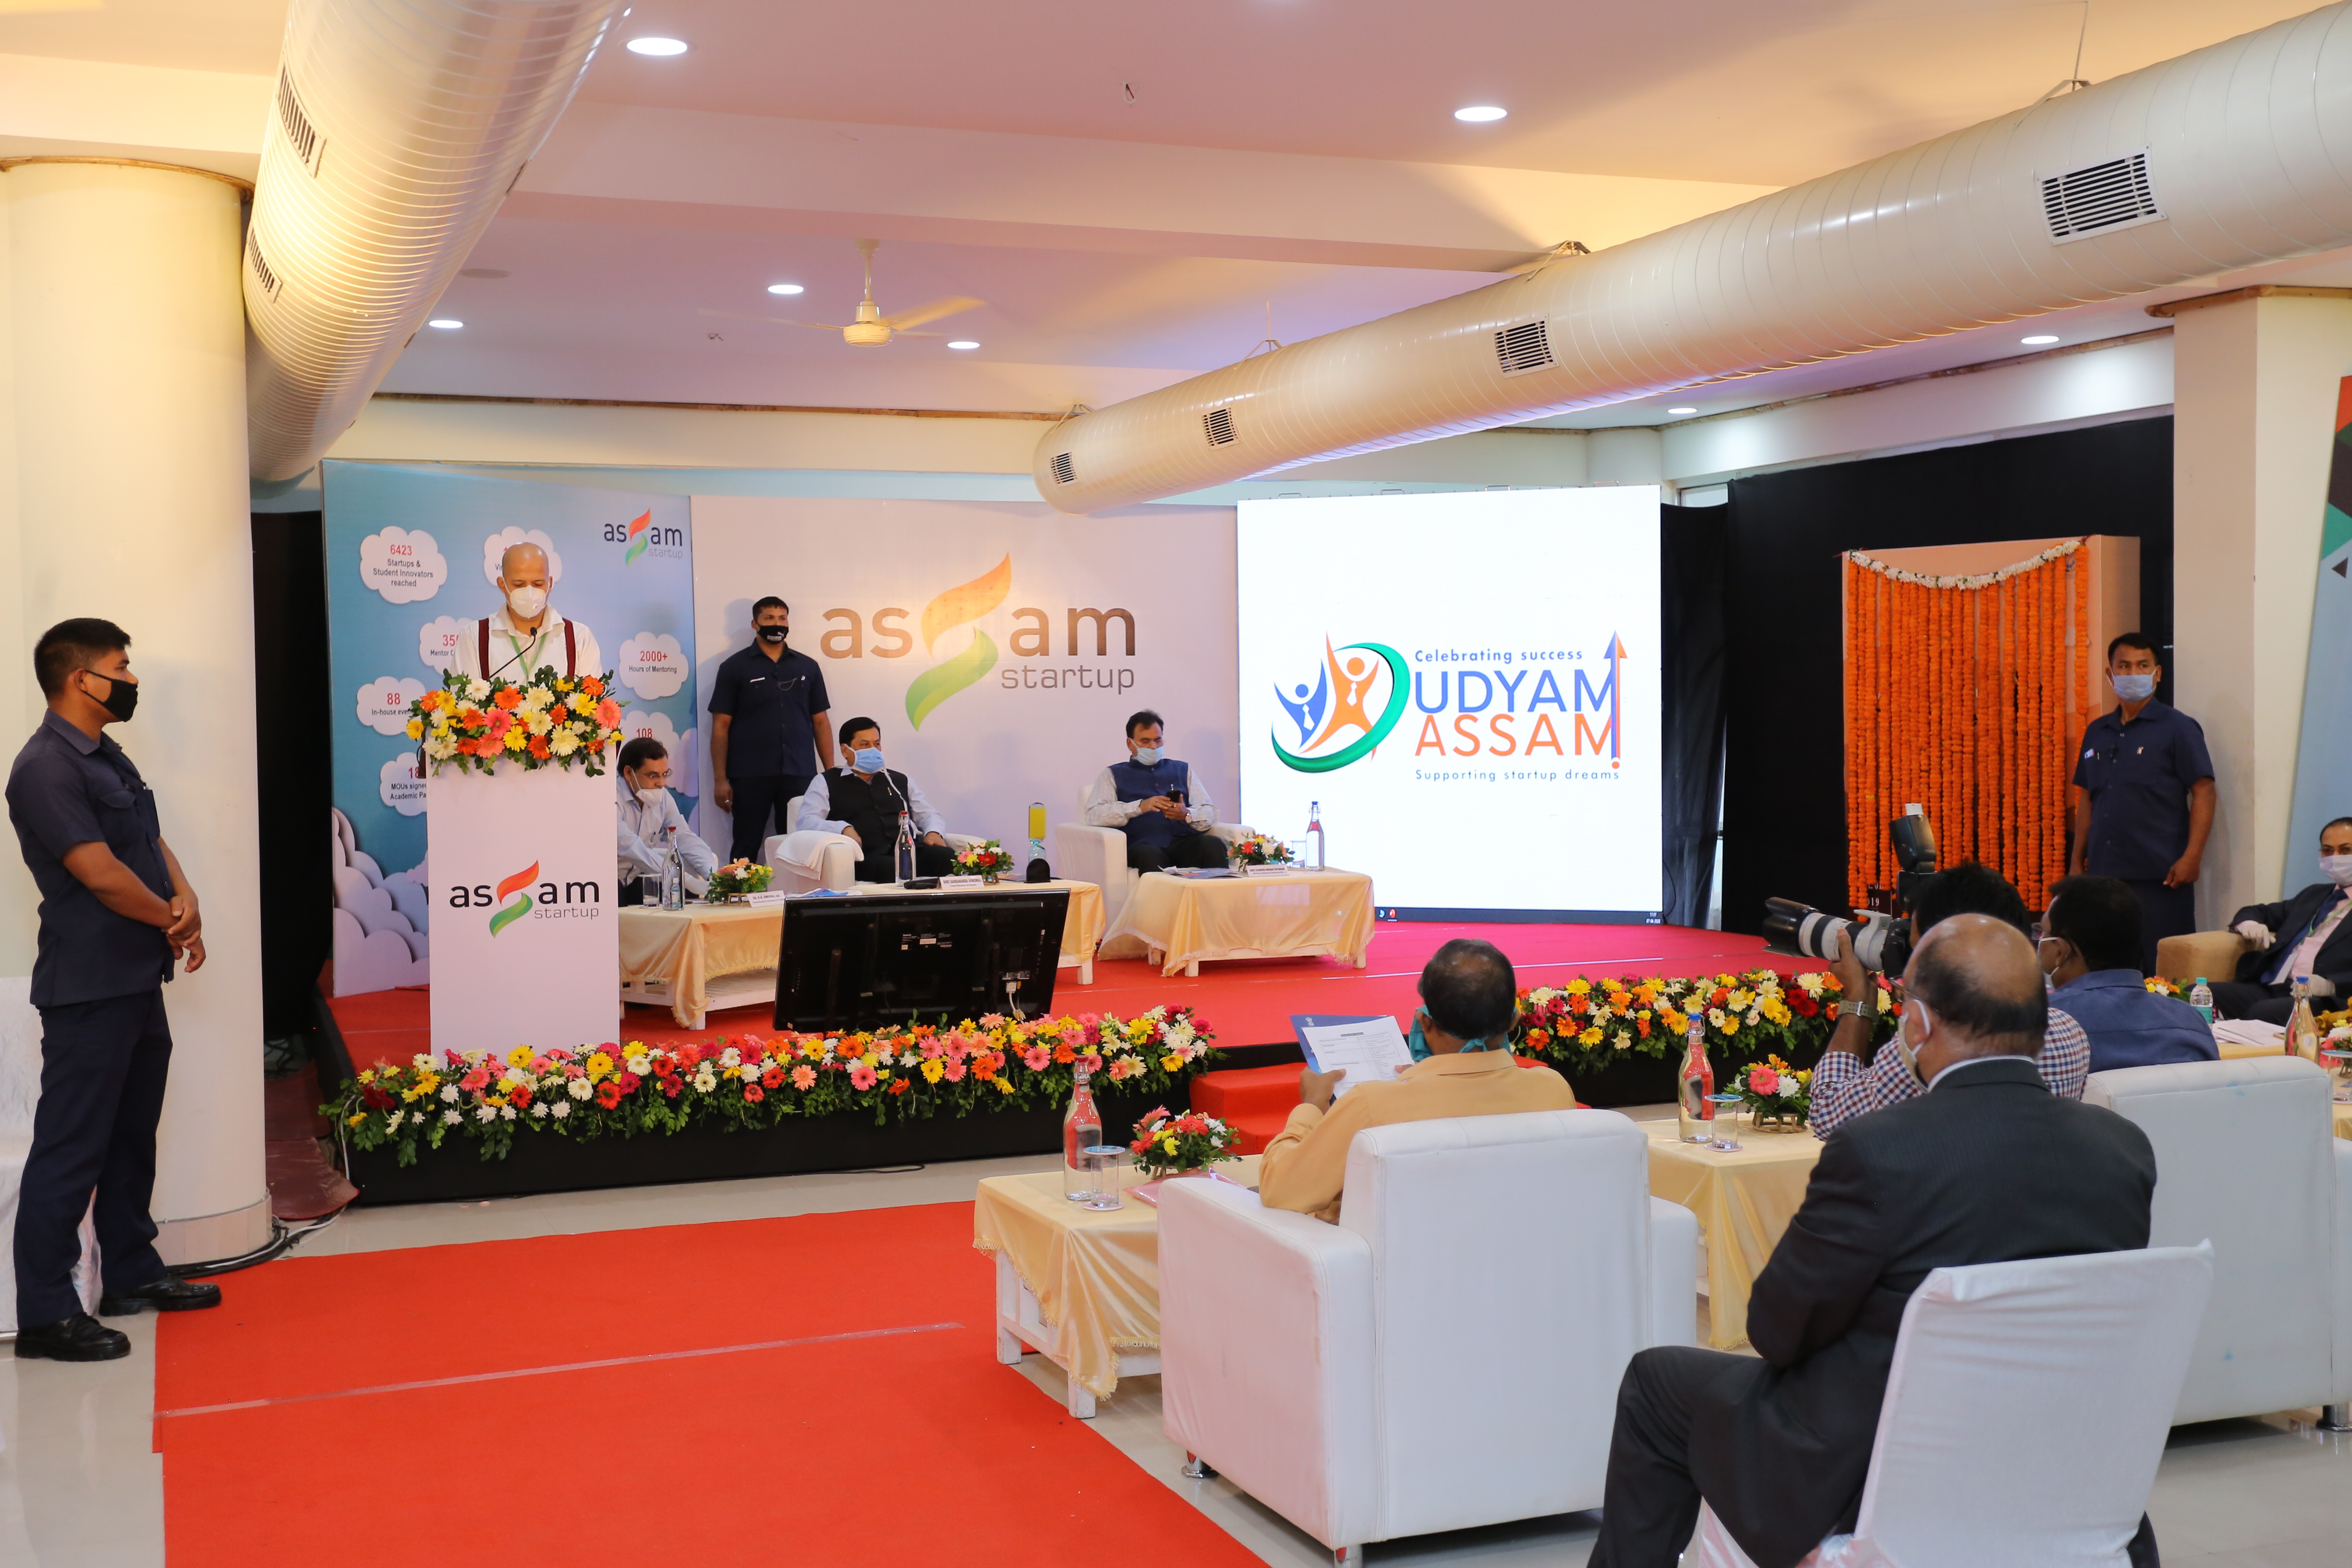 Assam Startup – The Nest hosts UDYAM ASSAM